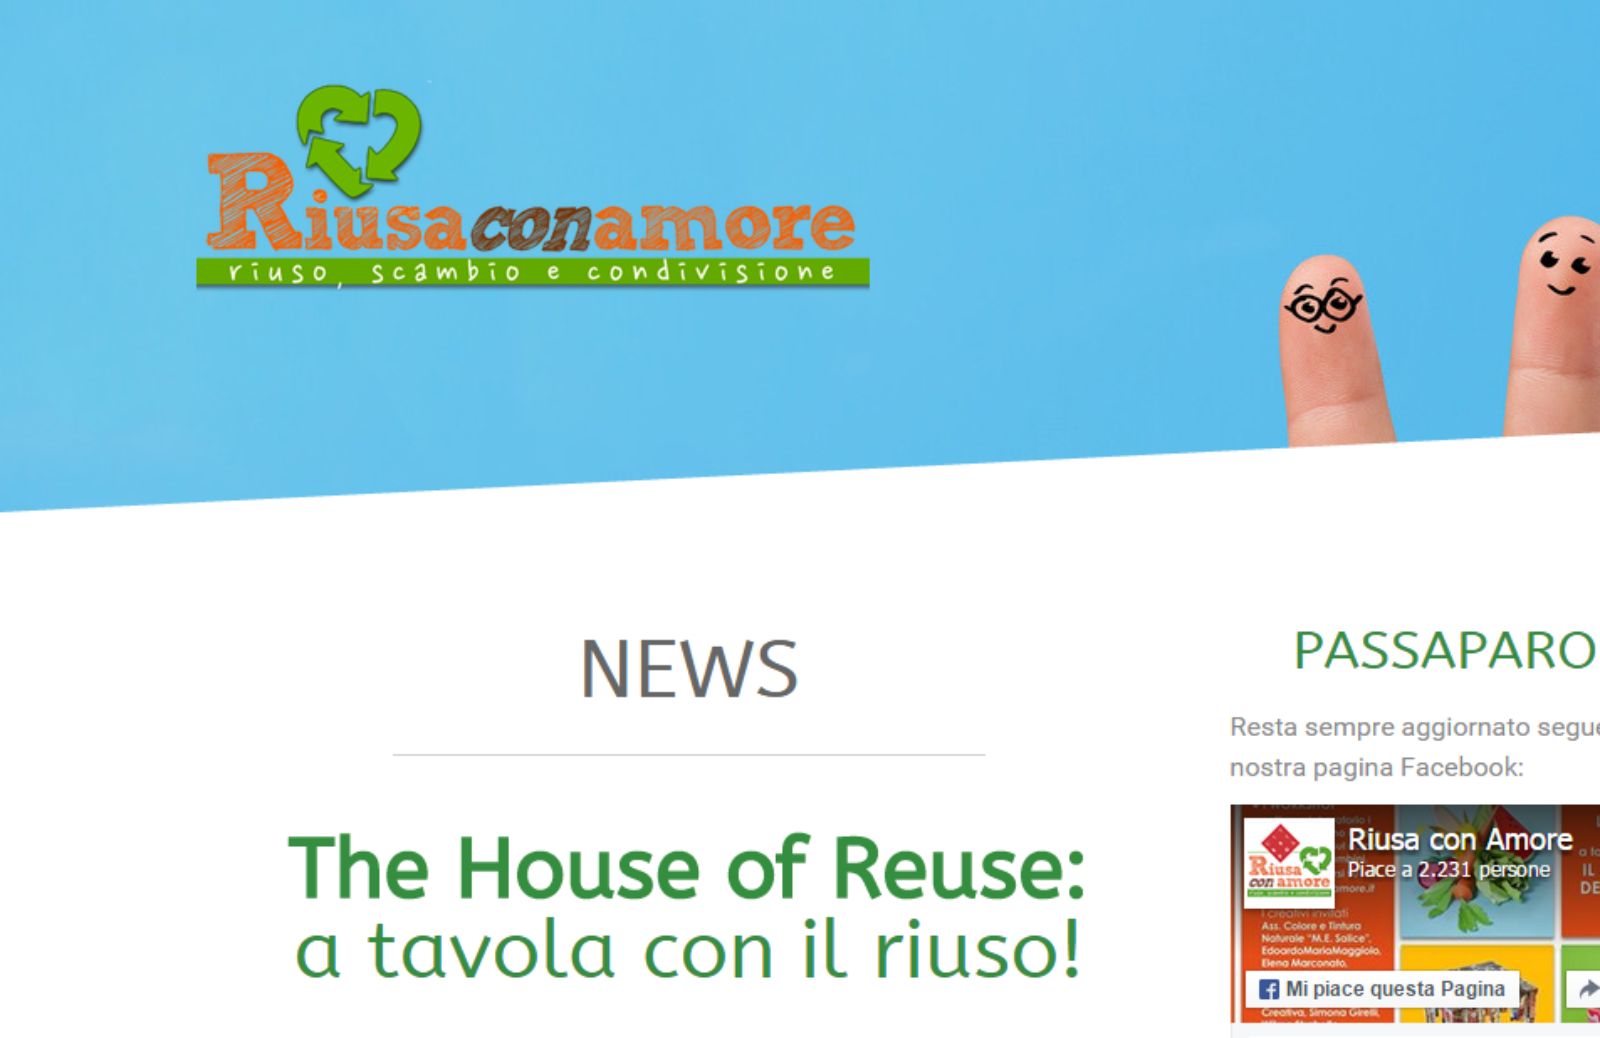 “The House of reuse”: l’evento dedicato a riuso e riciclo alla Fabbrica del Vapore